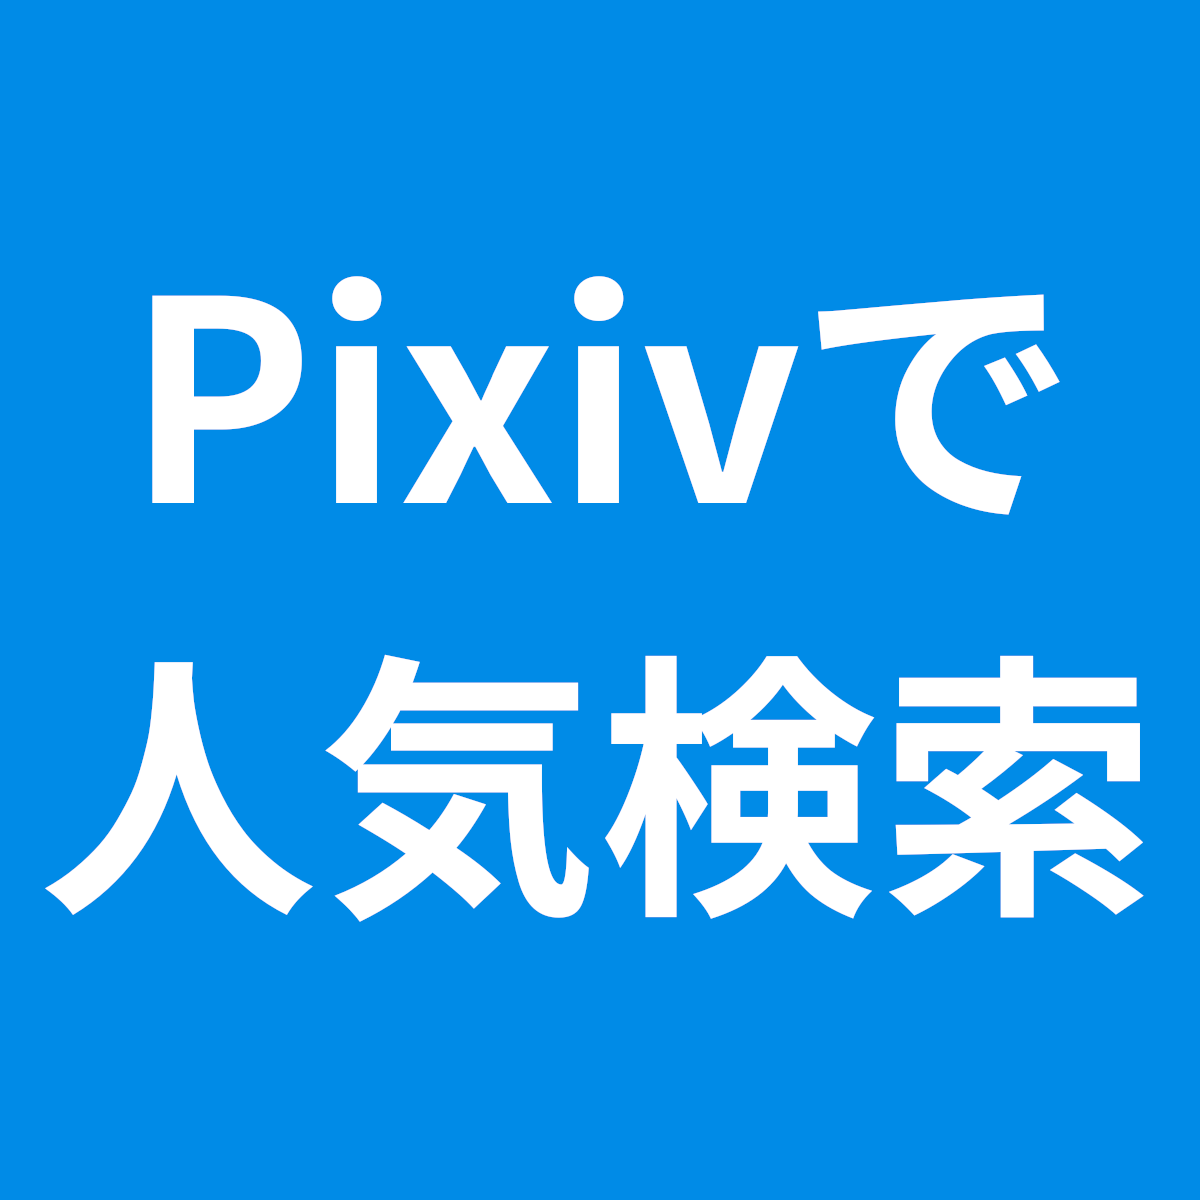 Pixivで一般会員でも無料で人気のイラストを検索する方法 Pcツール Net